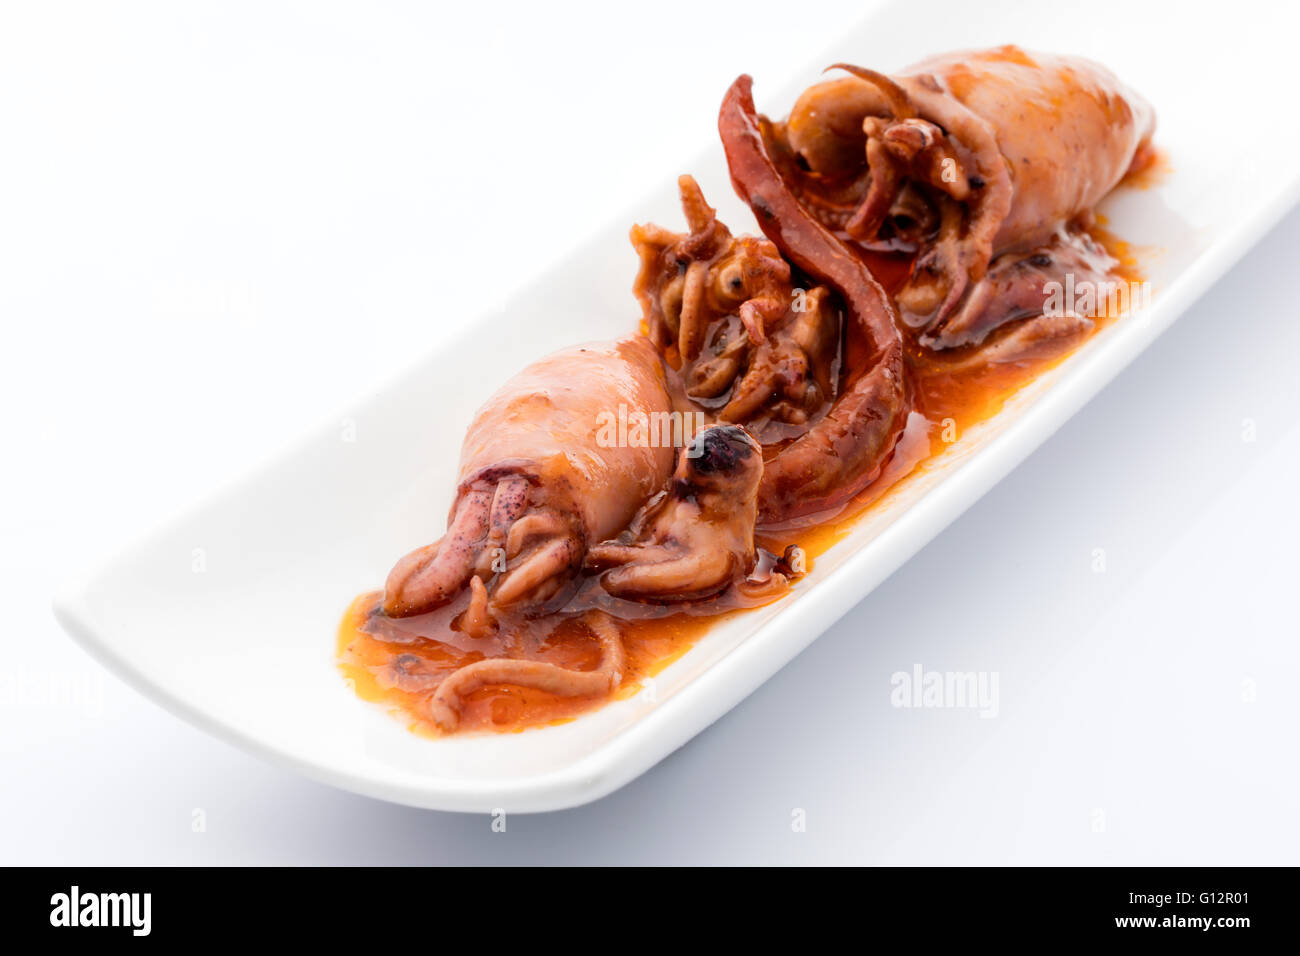 Snack calamares conservar en salsa de pimienta caliente sobre un fondo blanco. Foto de stock